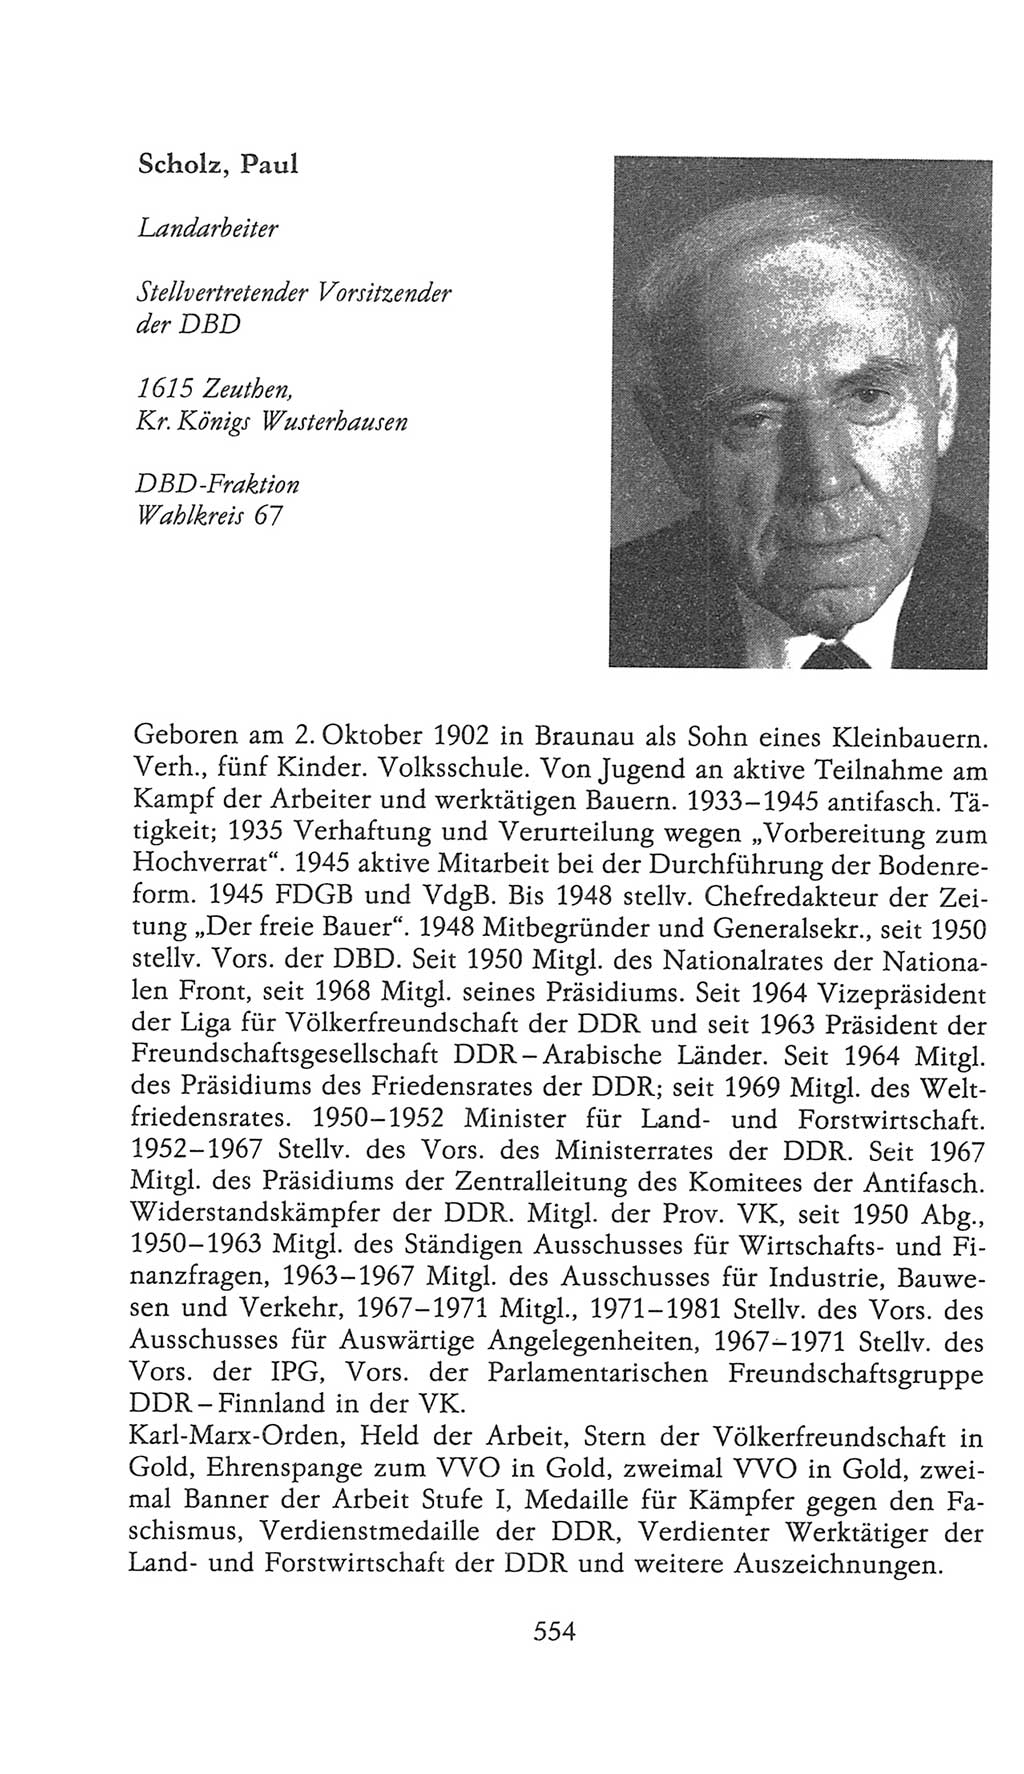 Volkskammer (VK) der Deutschen Demokratischen Republik (DDR), 9. Wahlperiode 1986-1990, Seite 554 (VK. DDR 9. WP. 1986-1990, S. 554)